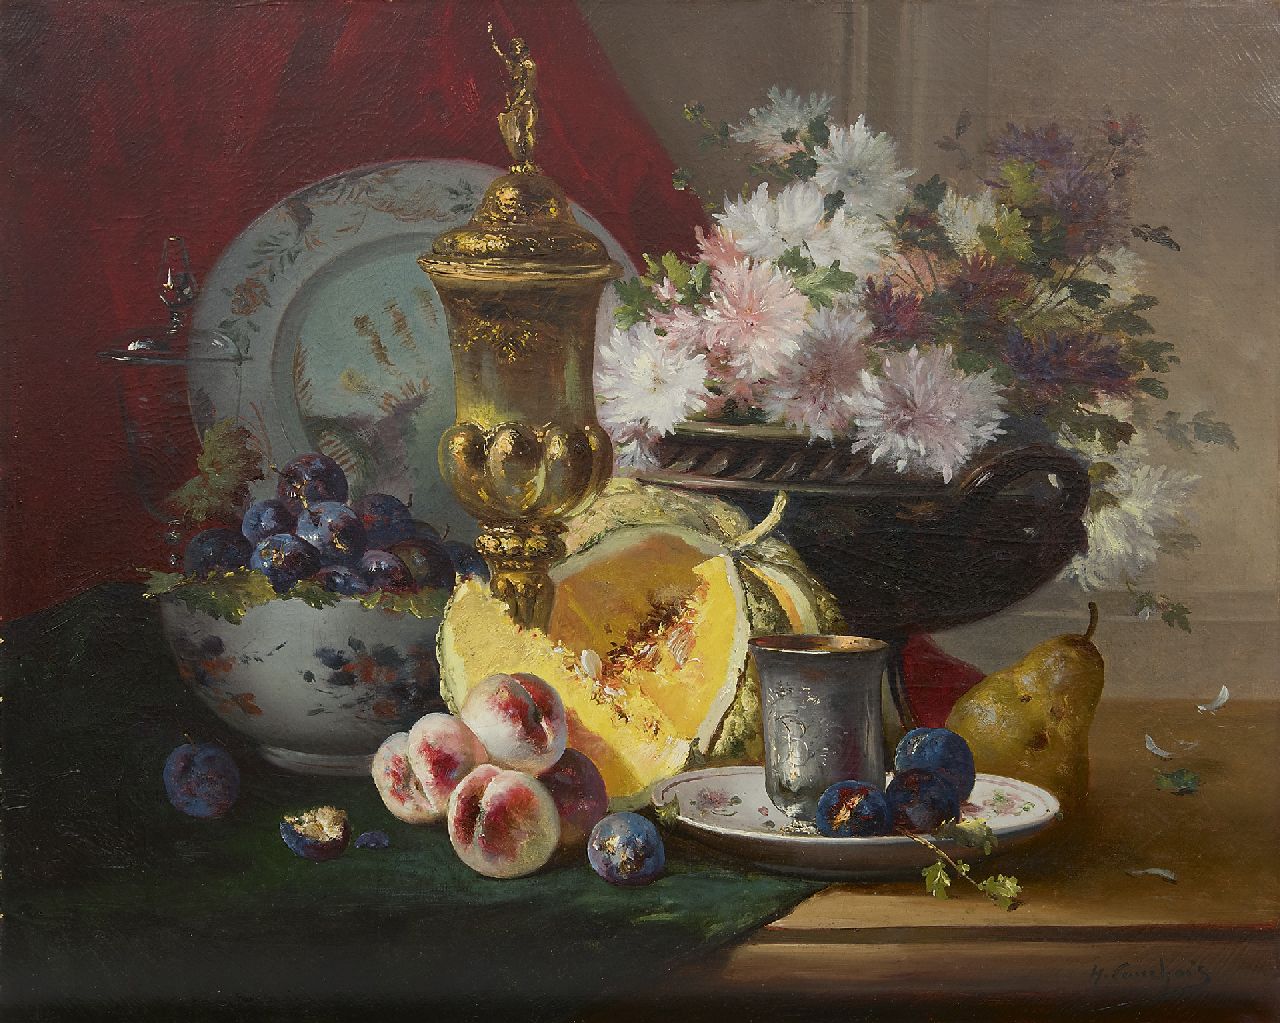 Cauchois E.H.  | Eugène-Henri Cauchois | Schilderijen te koop aangeboden | Stilleven met vaatwerk, bloemen en fruit, olieverf op doek 63,4 x 77,3 cm, gesigneerd rechtsonder